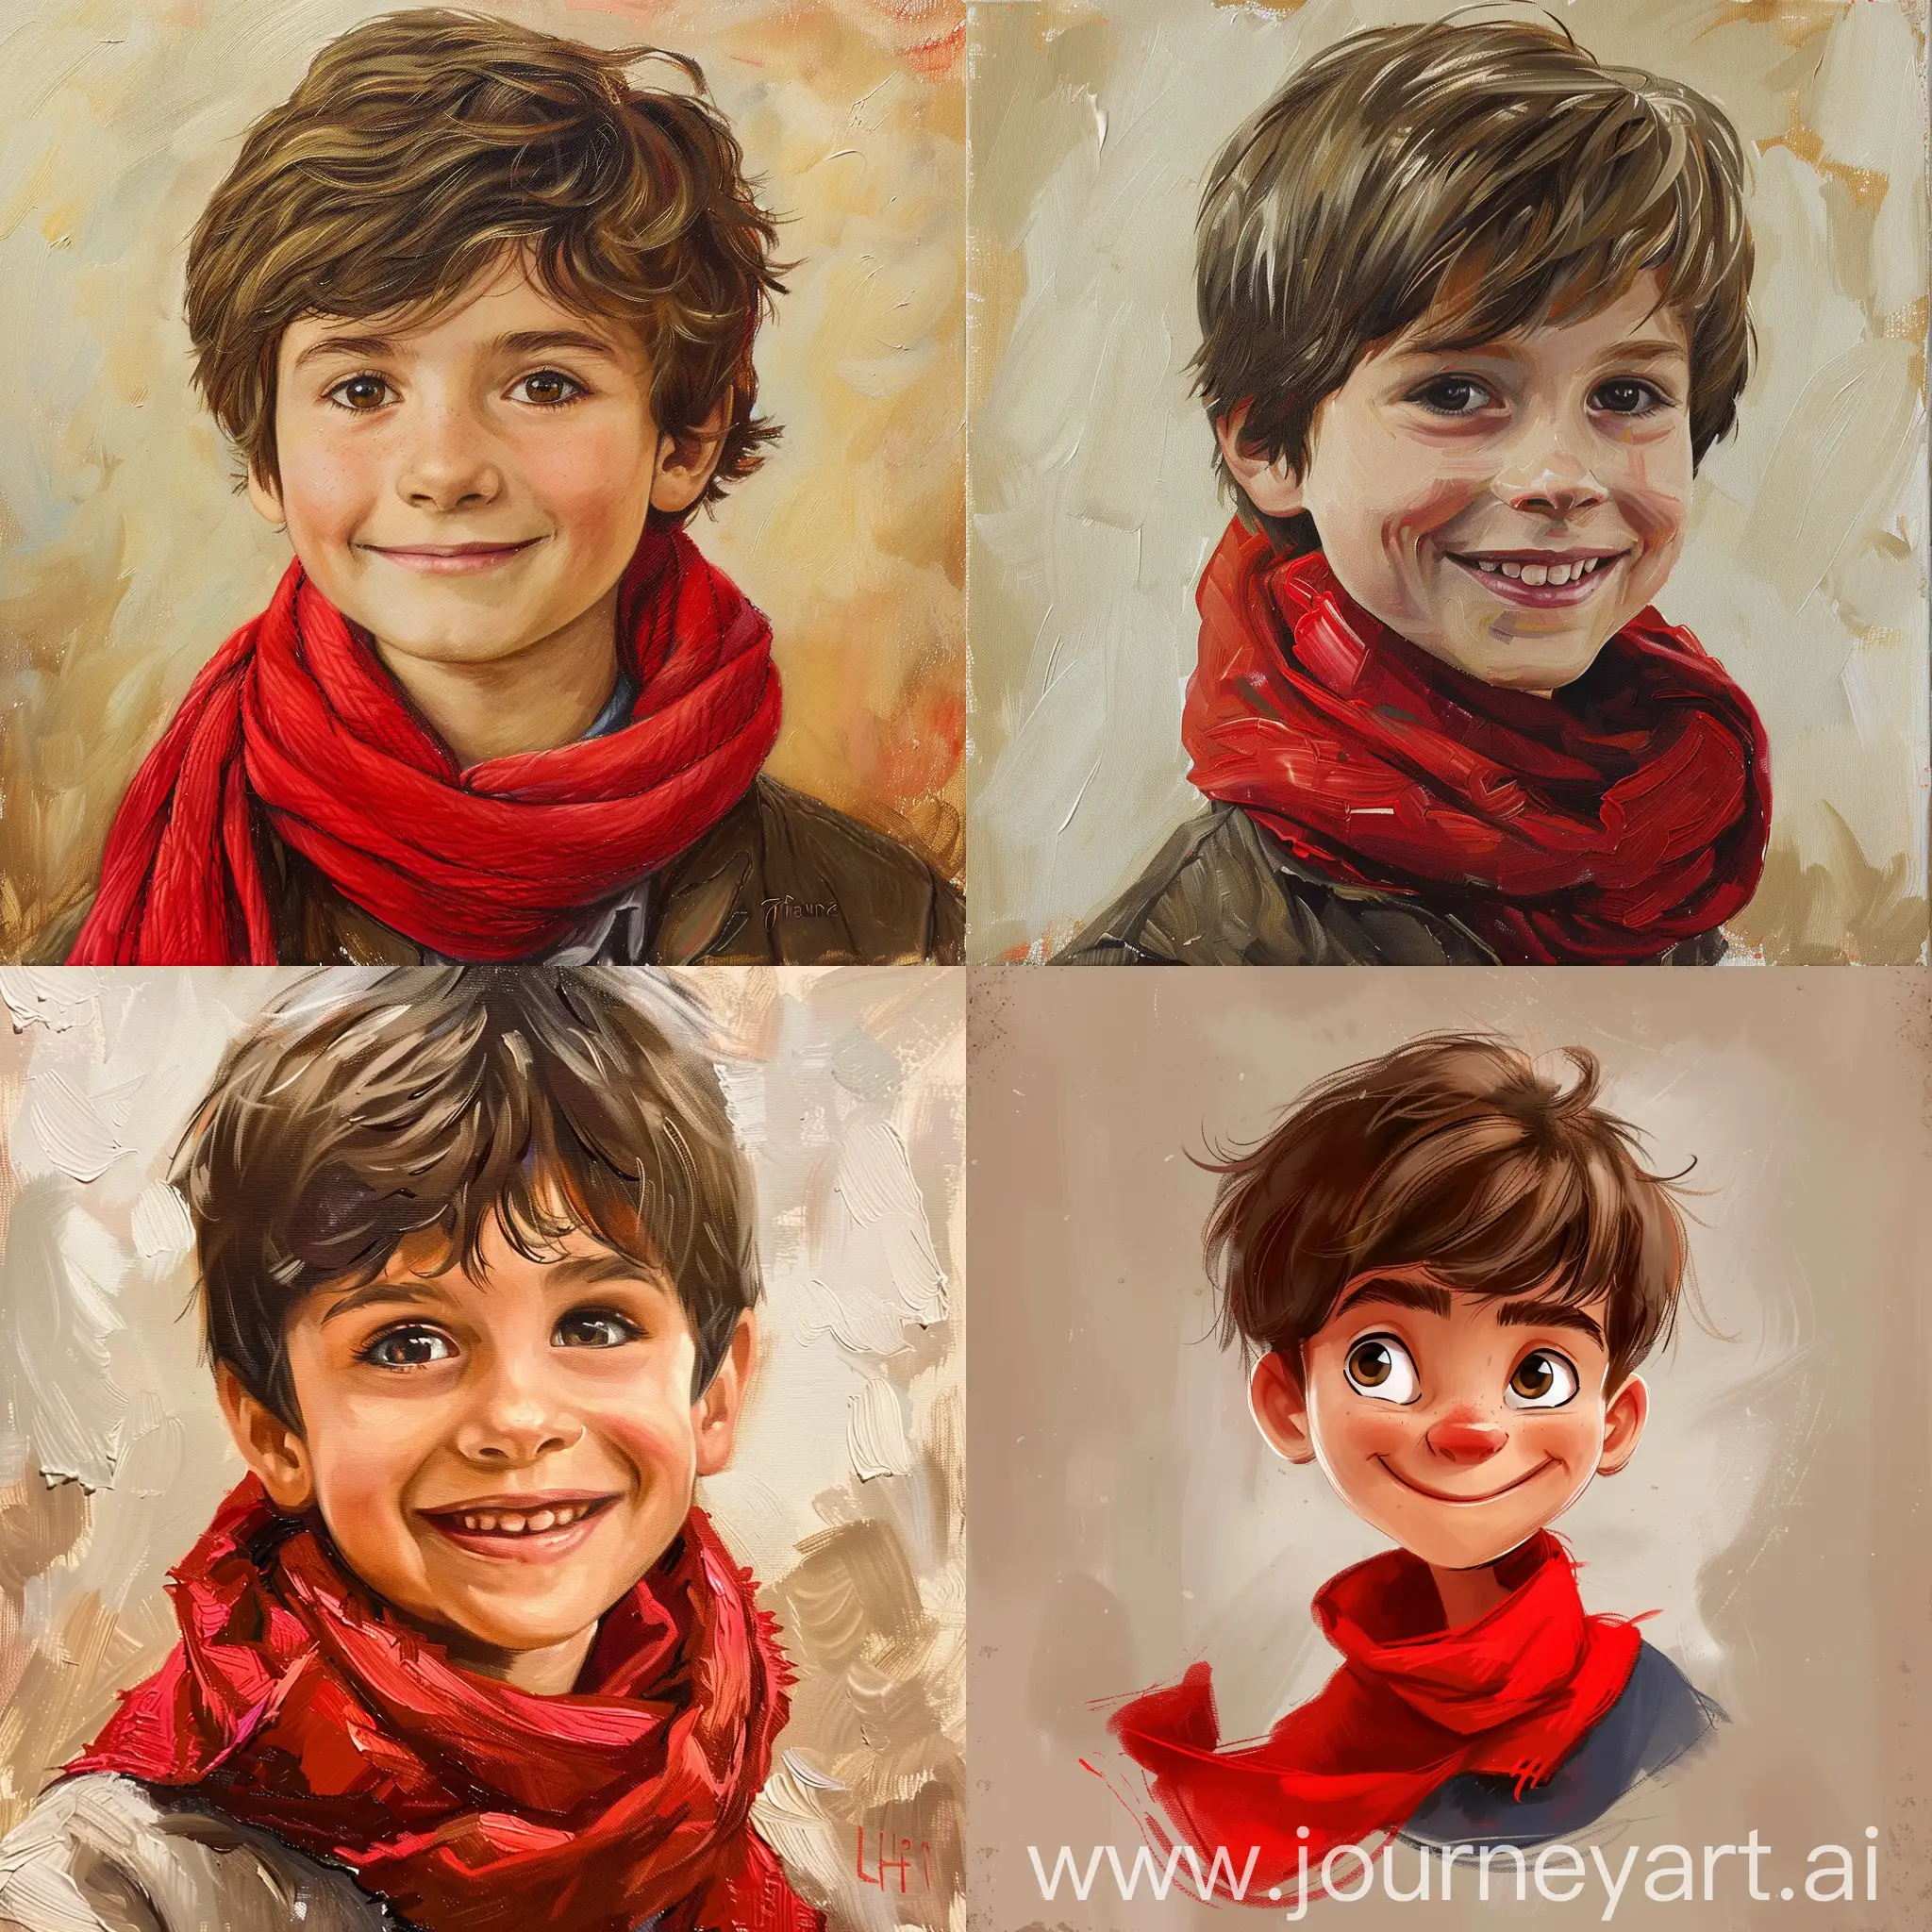 арт портет парня с коричневыми волосами, шарф красный, улыбка